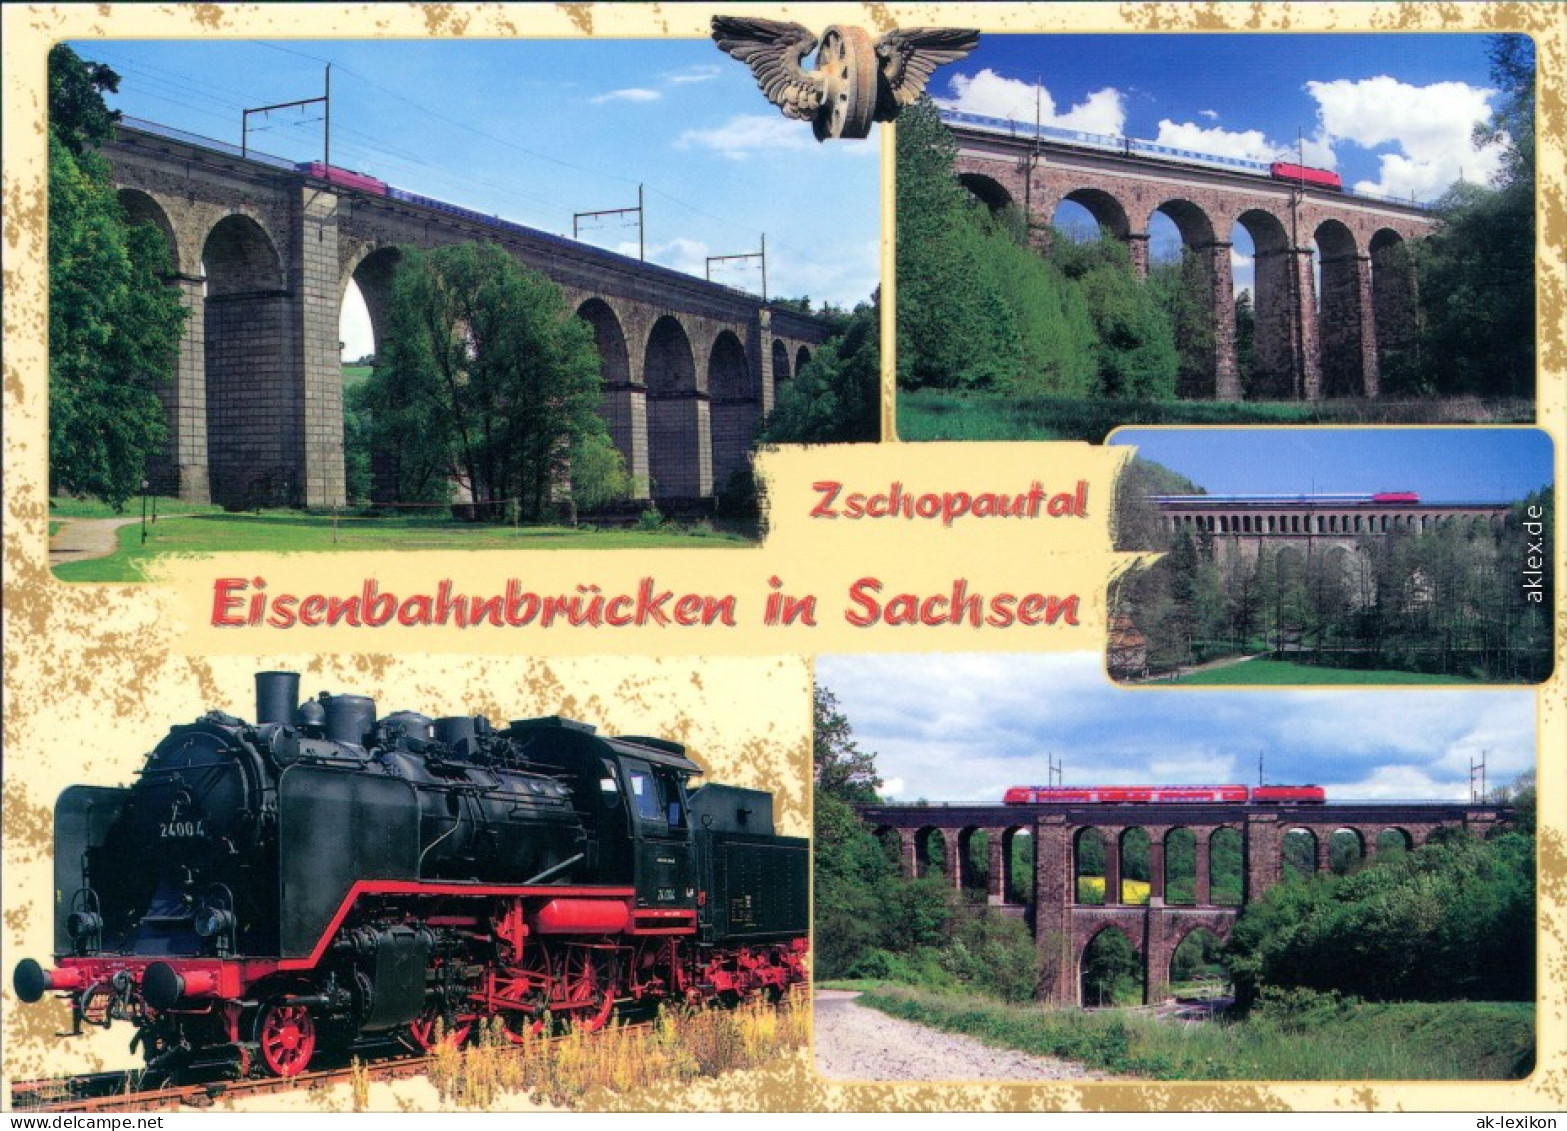 Ansichtskarte Zschopau Eisenbahnbrücken, Zschopautal 2002 - Zschopau